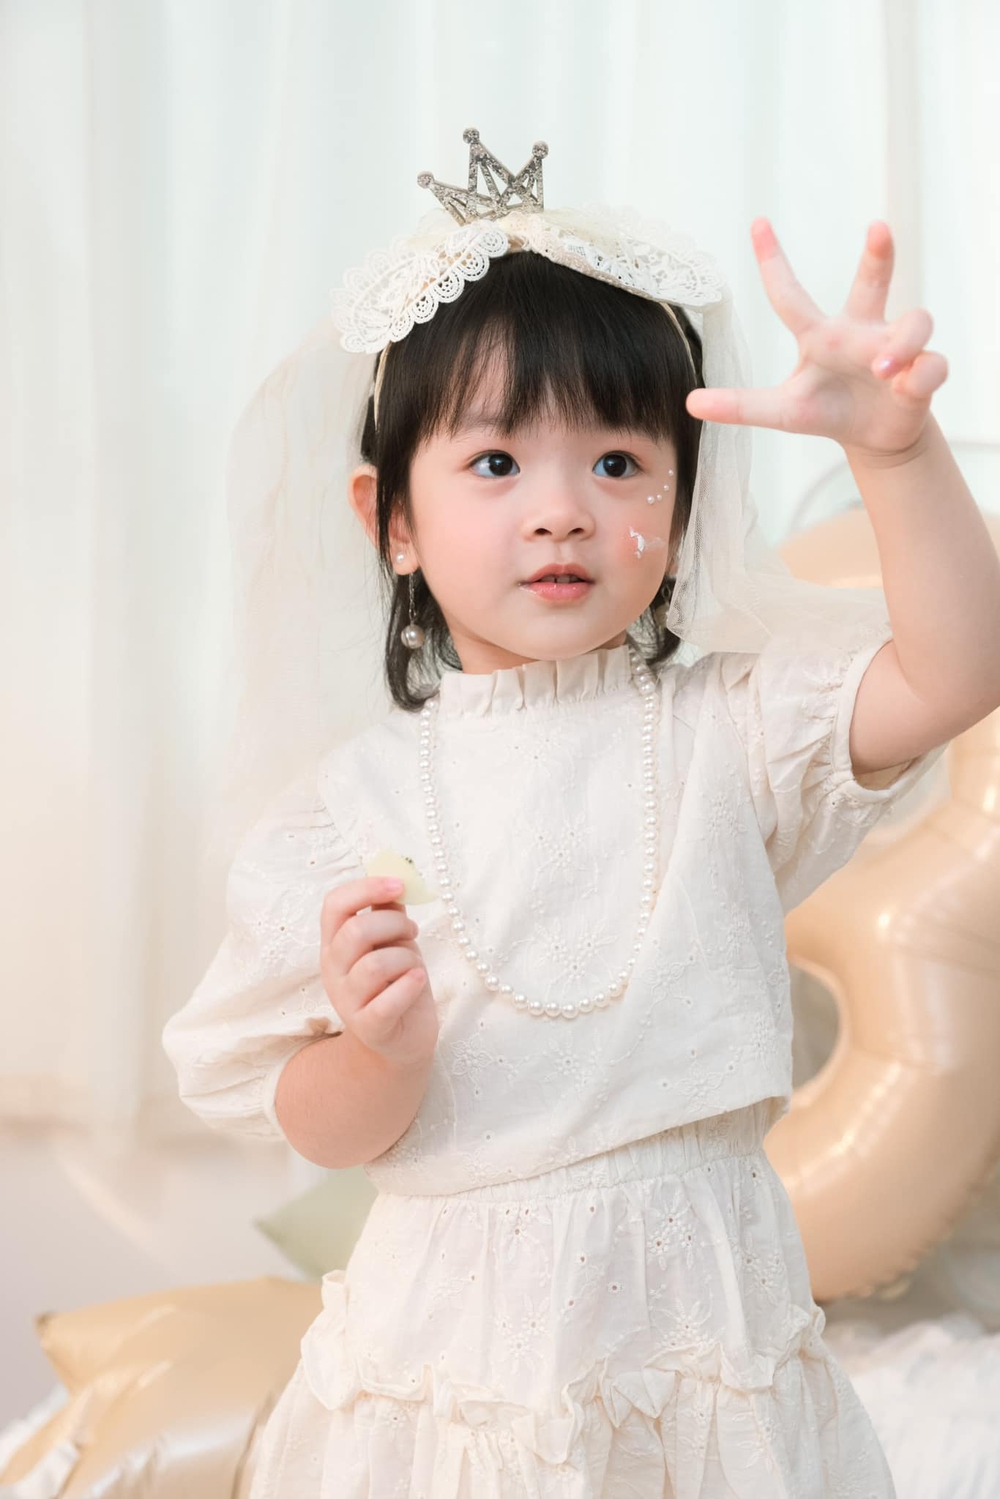 Con gái Trương Mỹ Nhân - Phí Ngọc Hưng được khen như tiểu công chúa, mới 3 tuổi đã bộc lộ tính cách đáng khen - Ảnh 1.